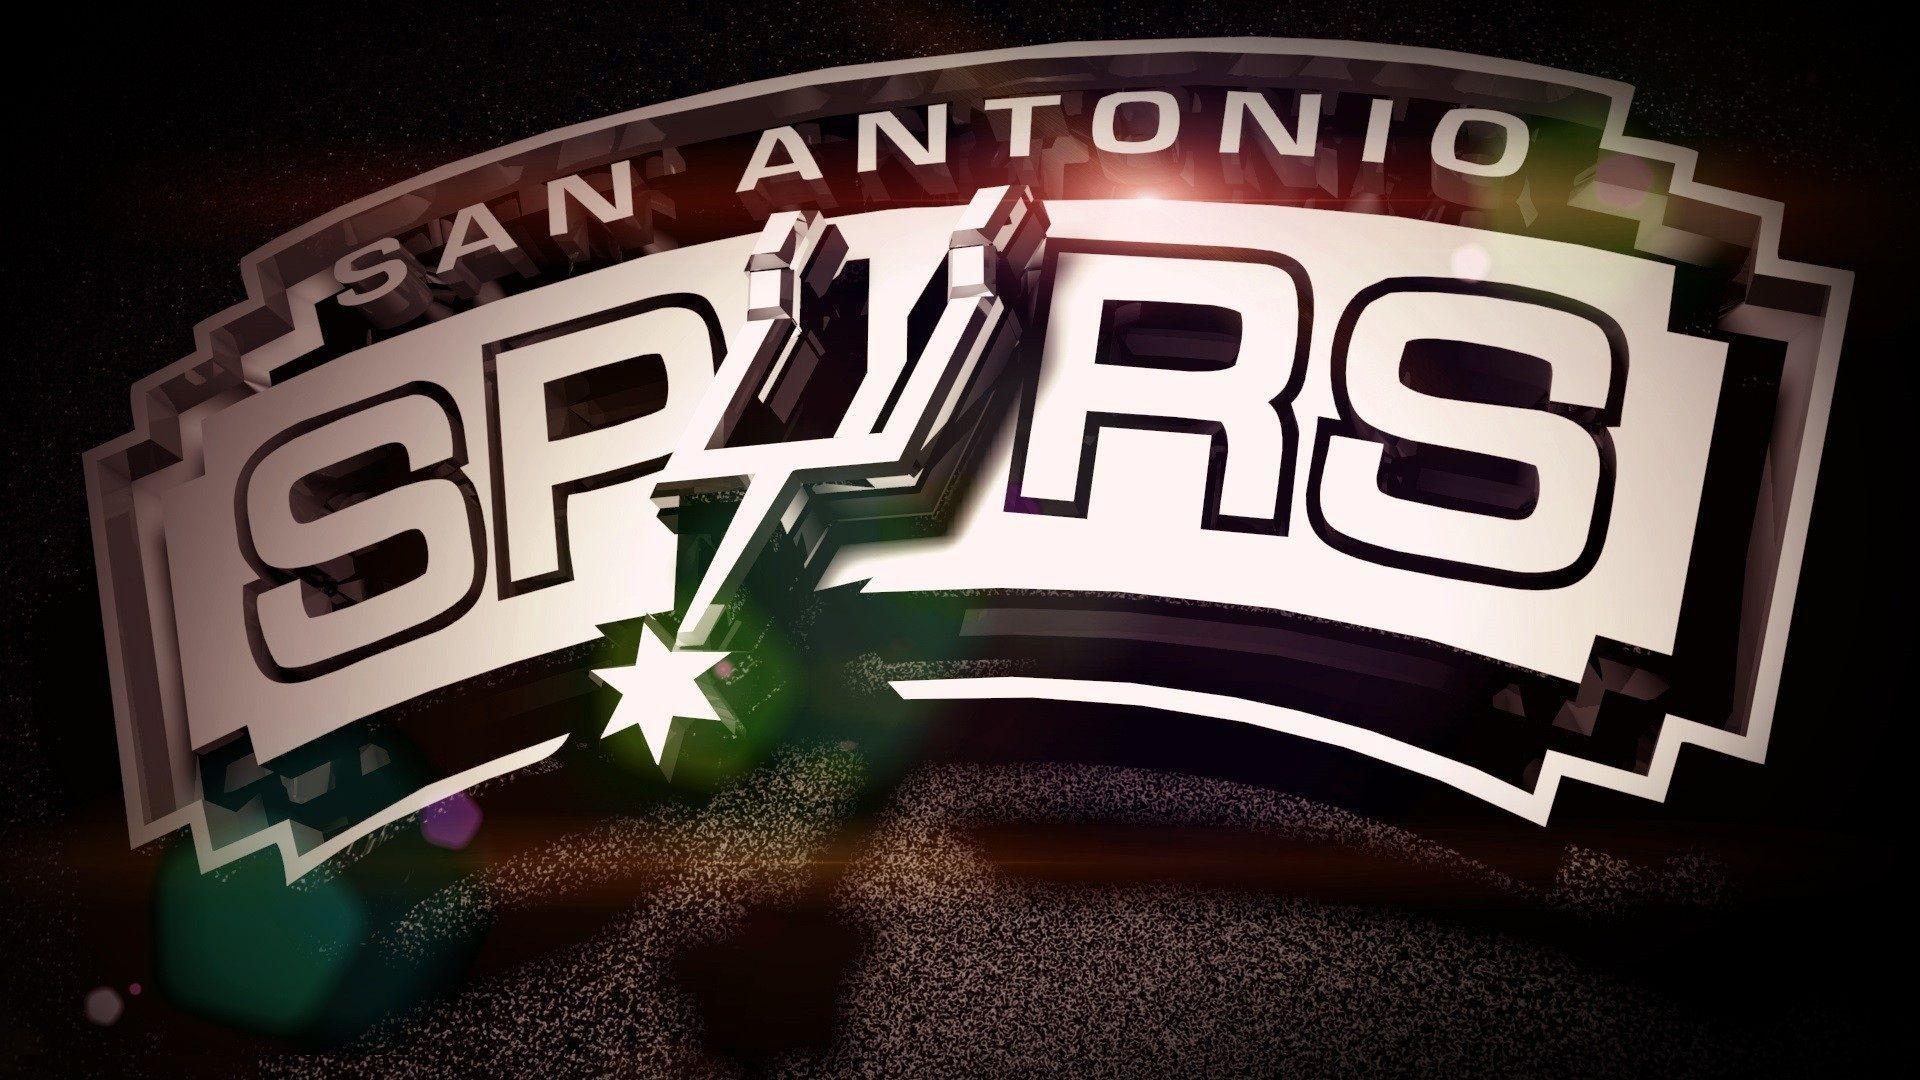 San Antonio Spurs Wallpaper HD. Wallpaper. San Antonio Spurs